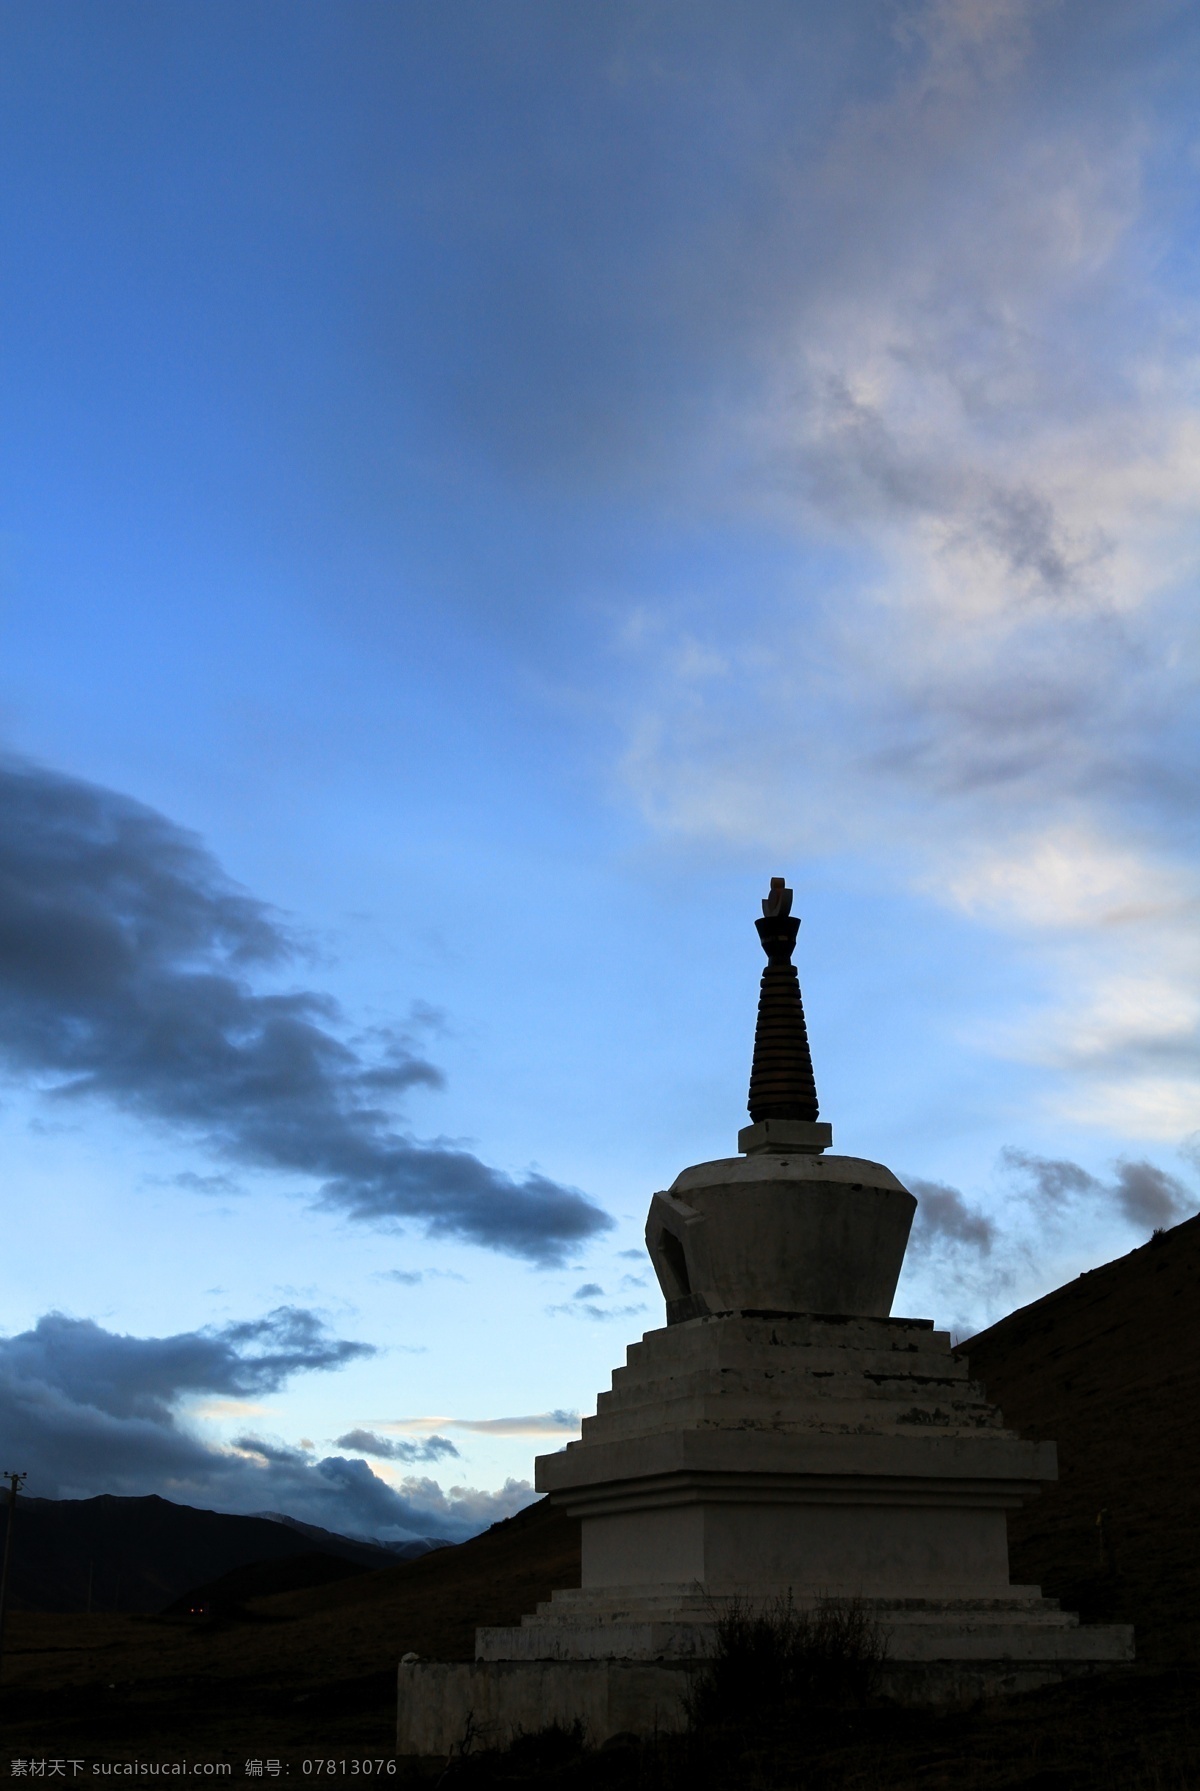 四川康定 自然风景 风景名胜 风景壁纸 新疆风景 西藏旅游 四川风景 国内旅游 旅游摄影 黑色